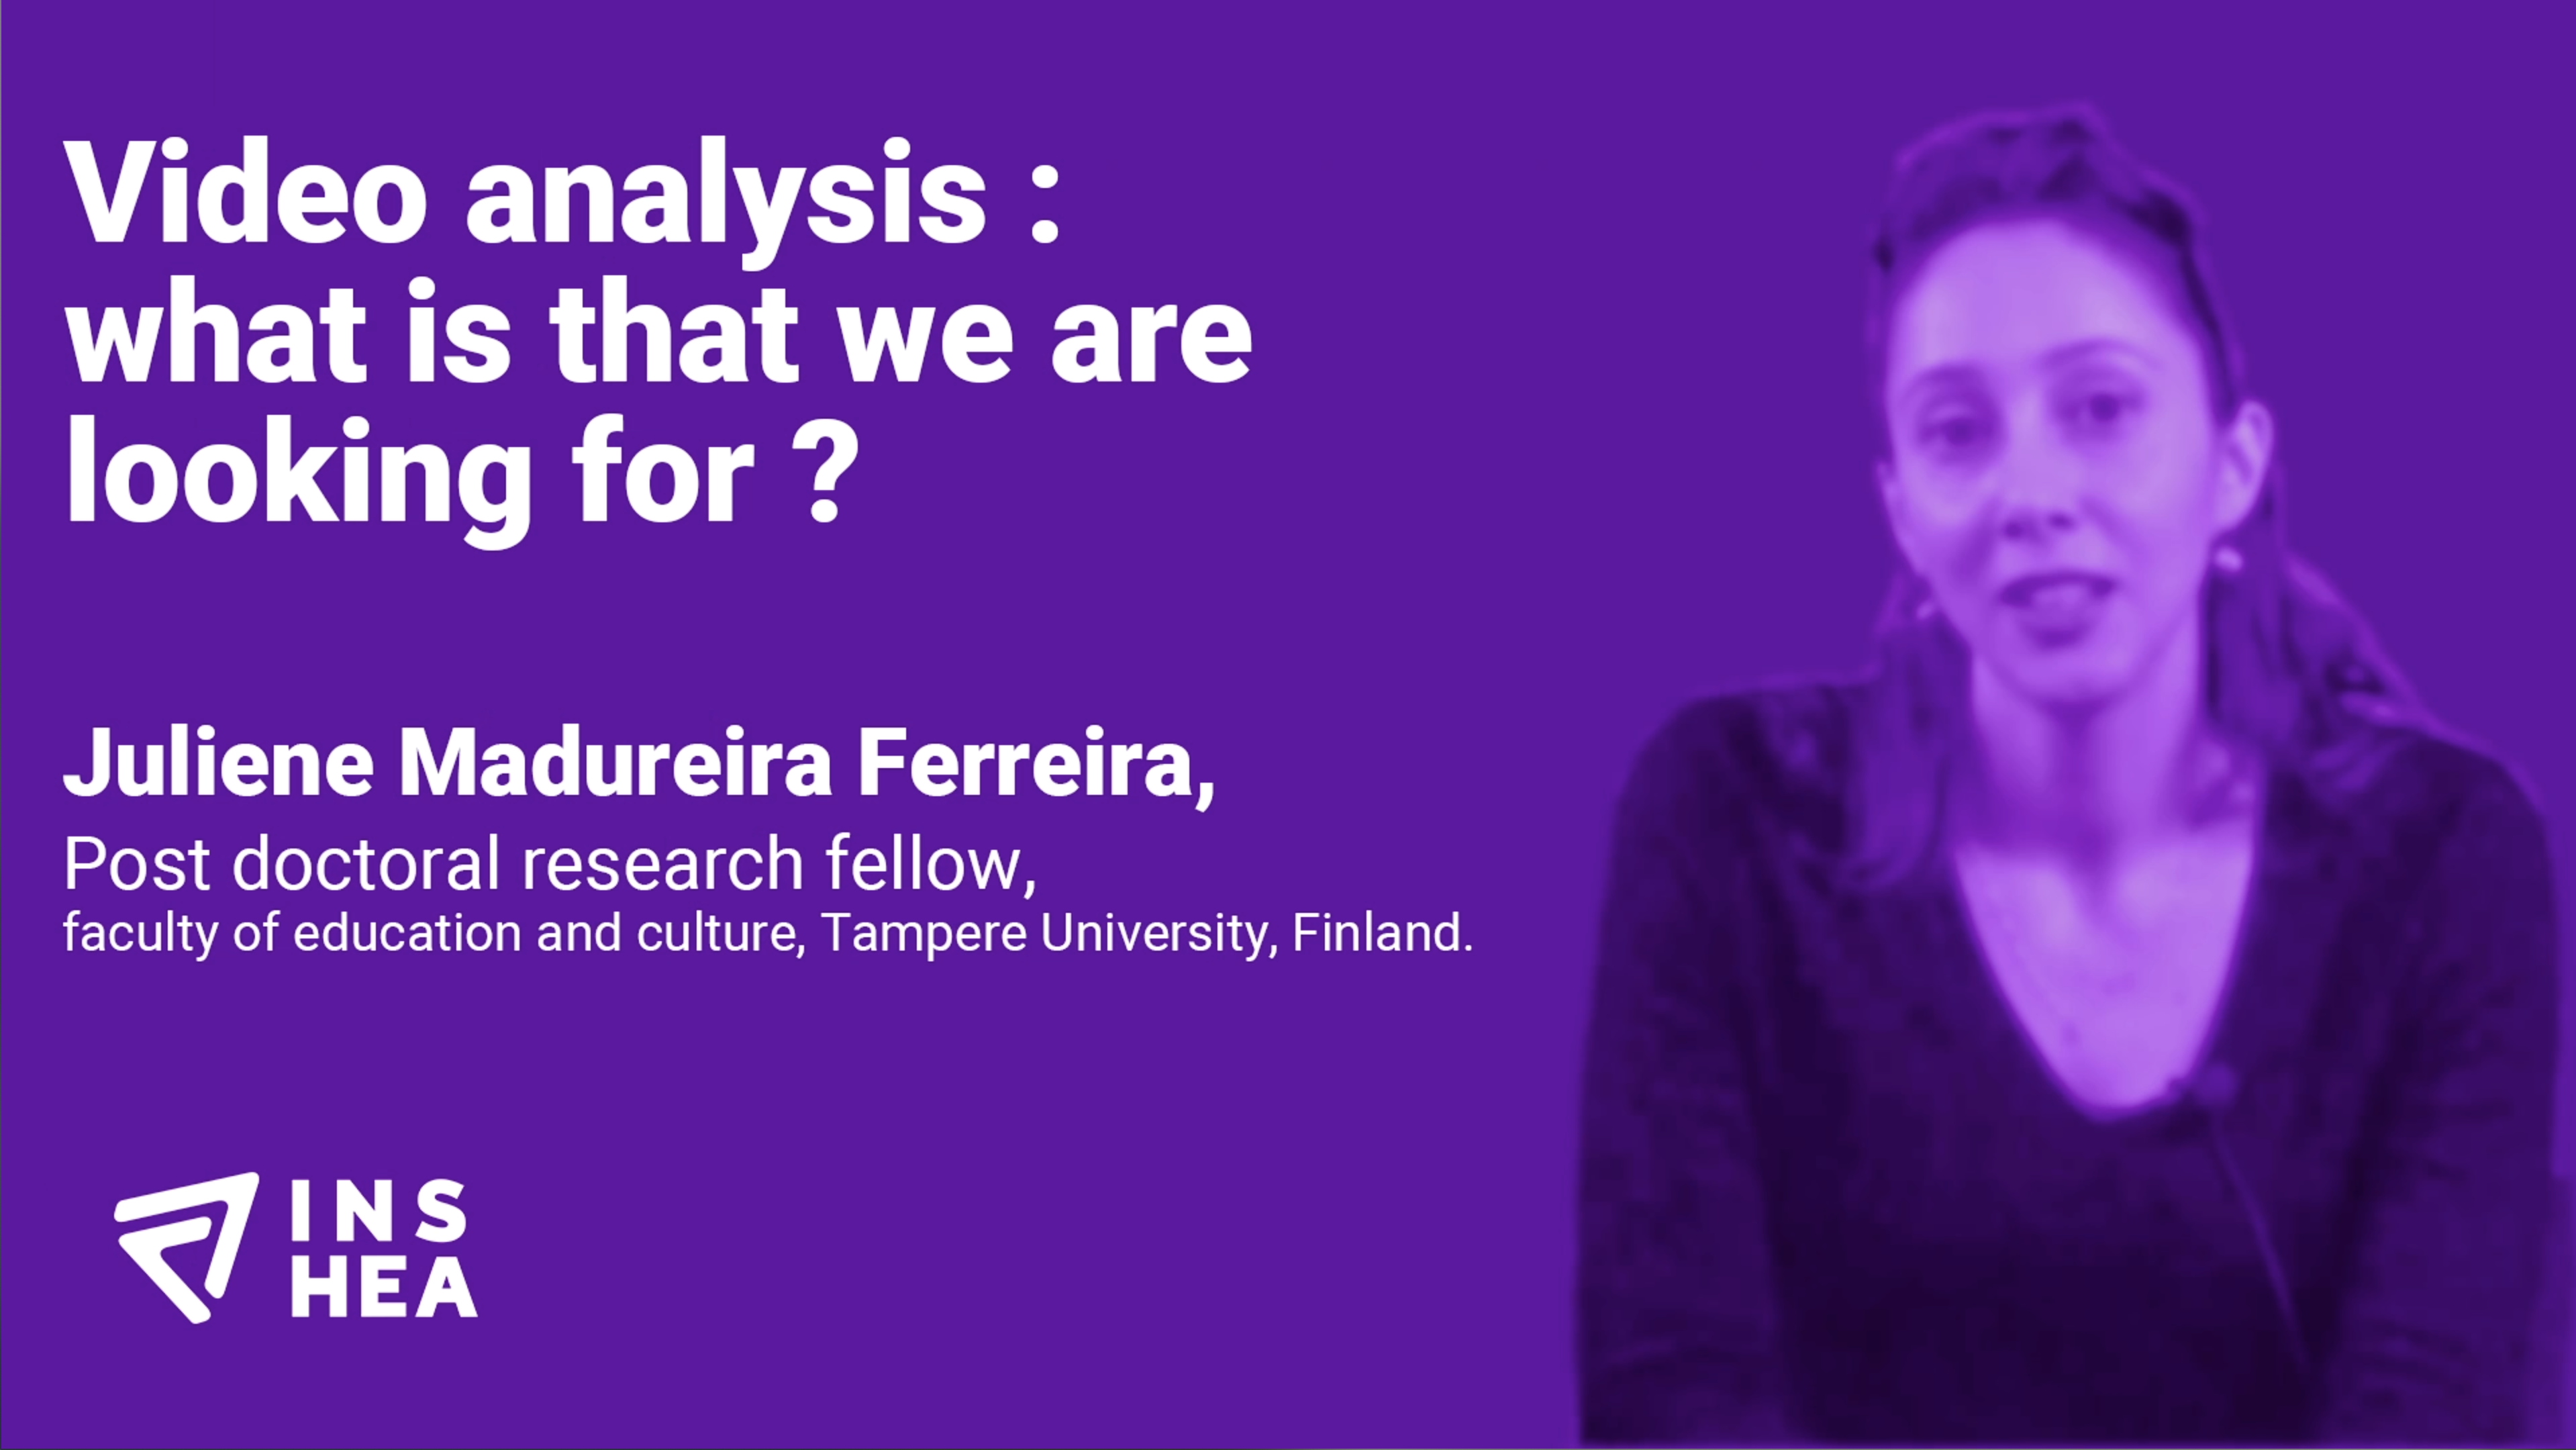 Conférence de Juliene Madureira Ferreira, chercheuse post-doctorante de l'université de Tampere (Finlande)